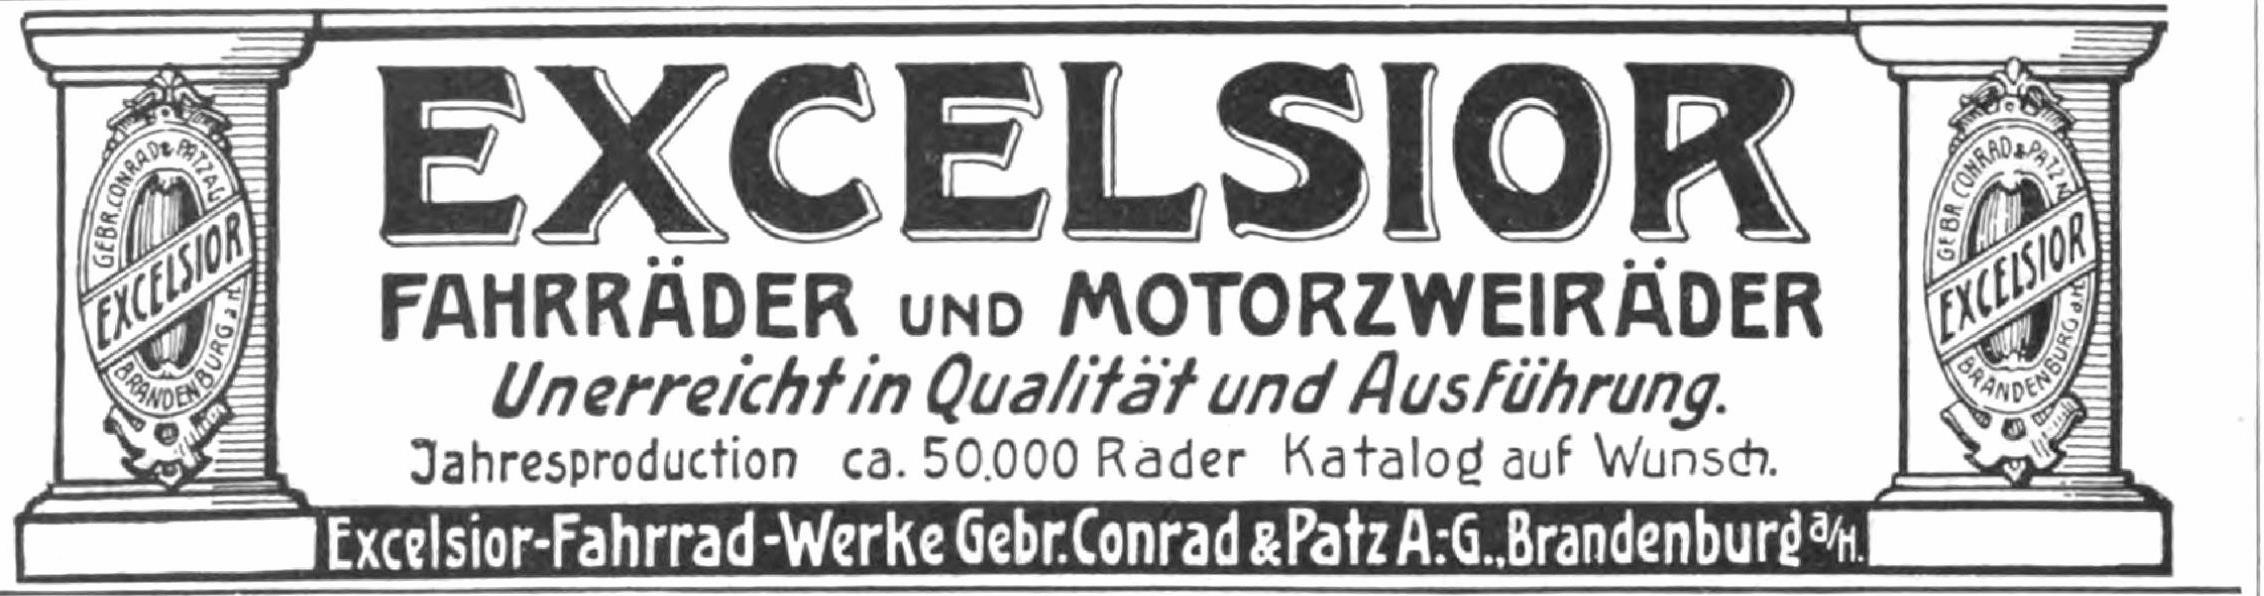 Excelsior 1907 495.jpg